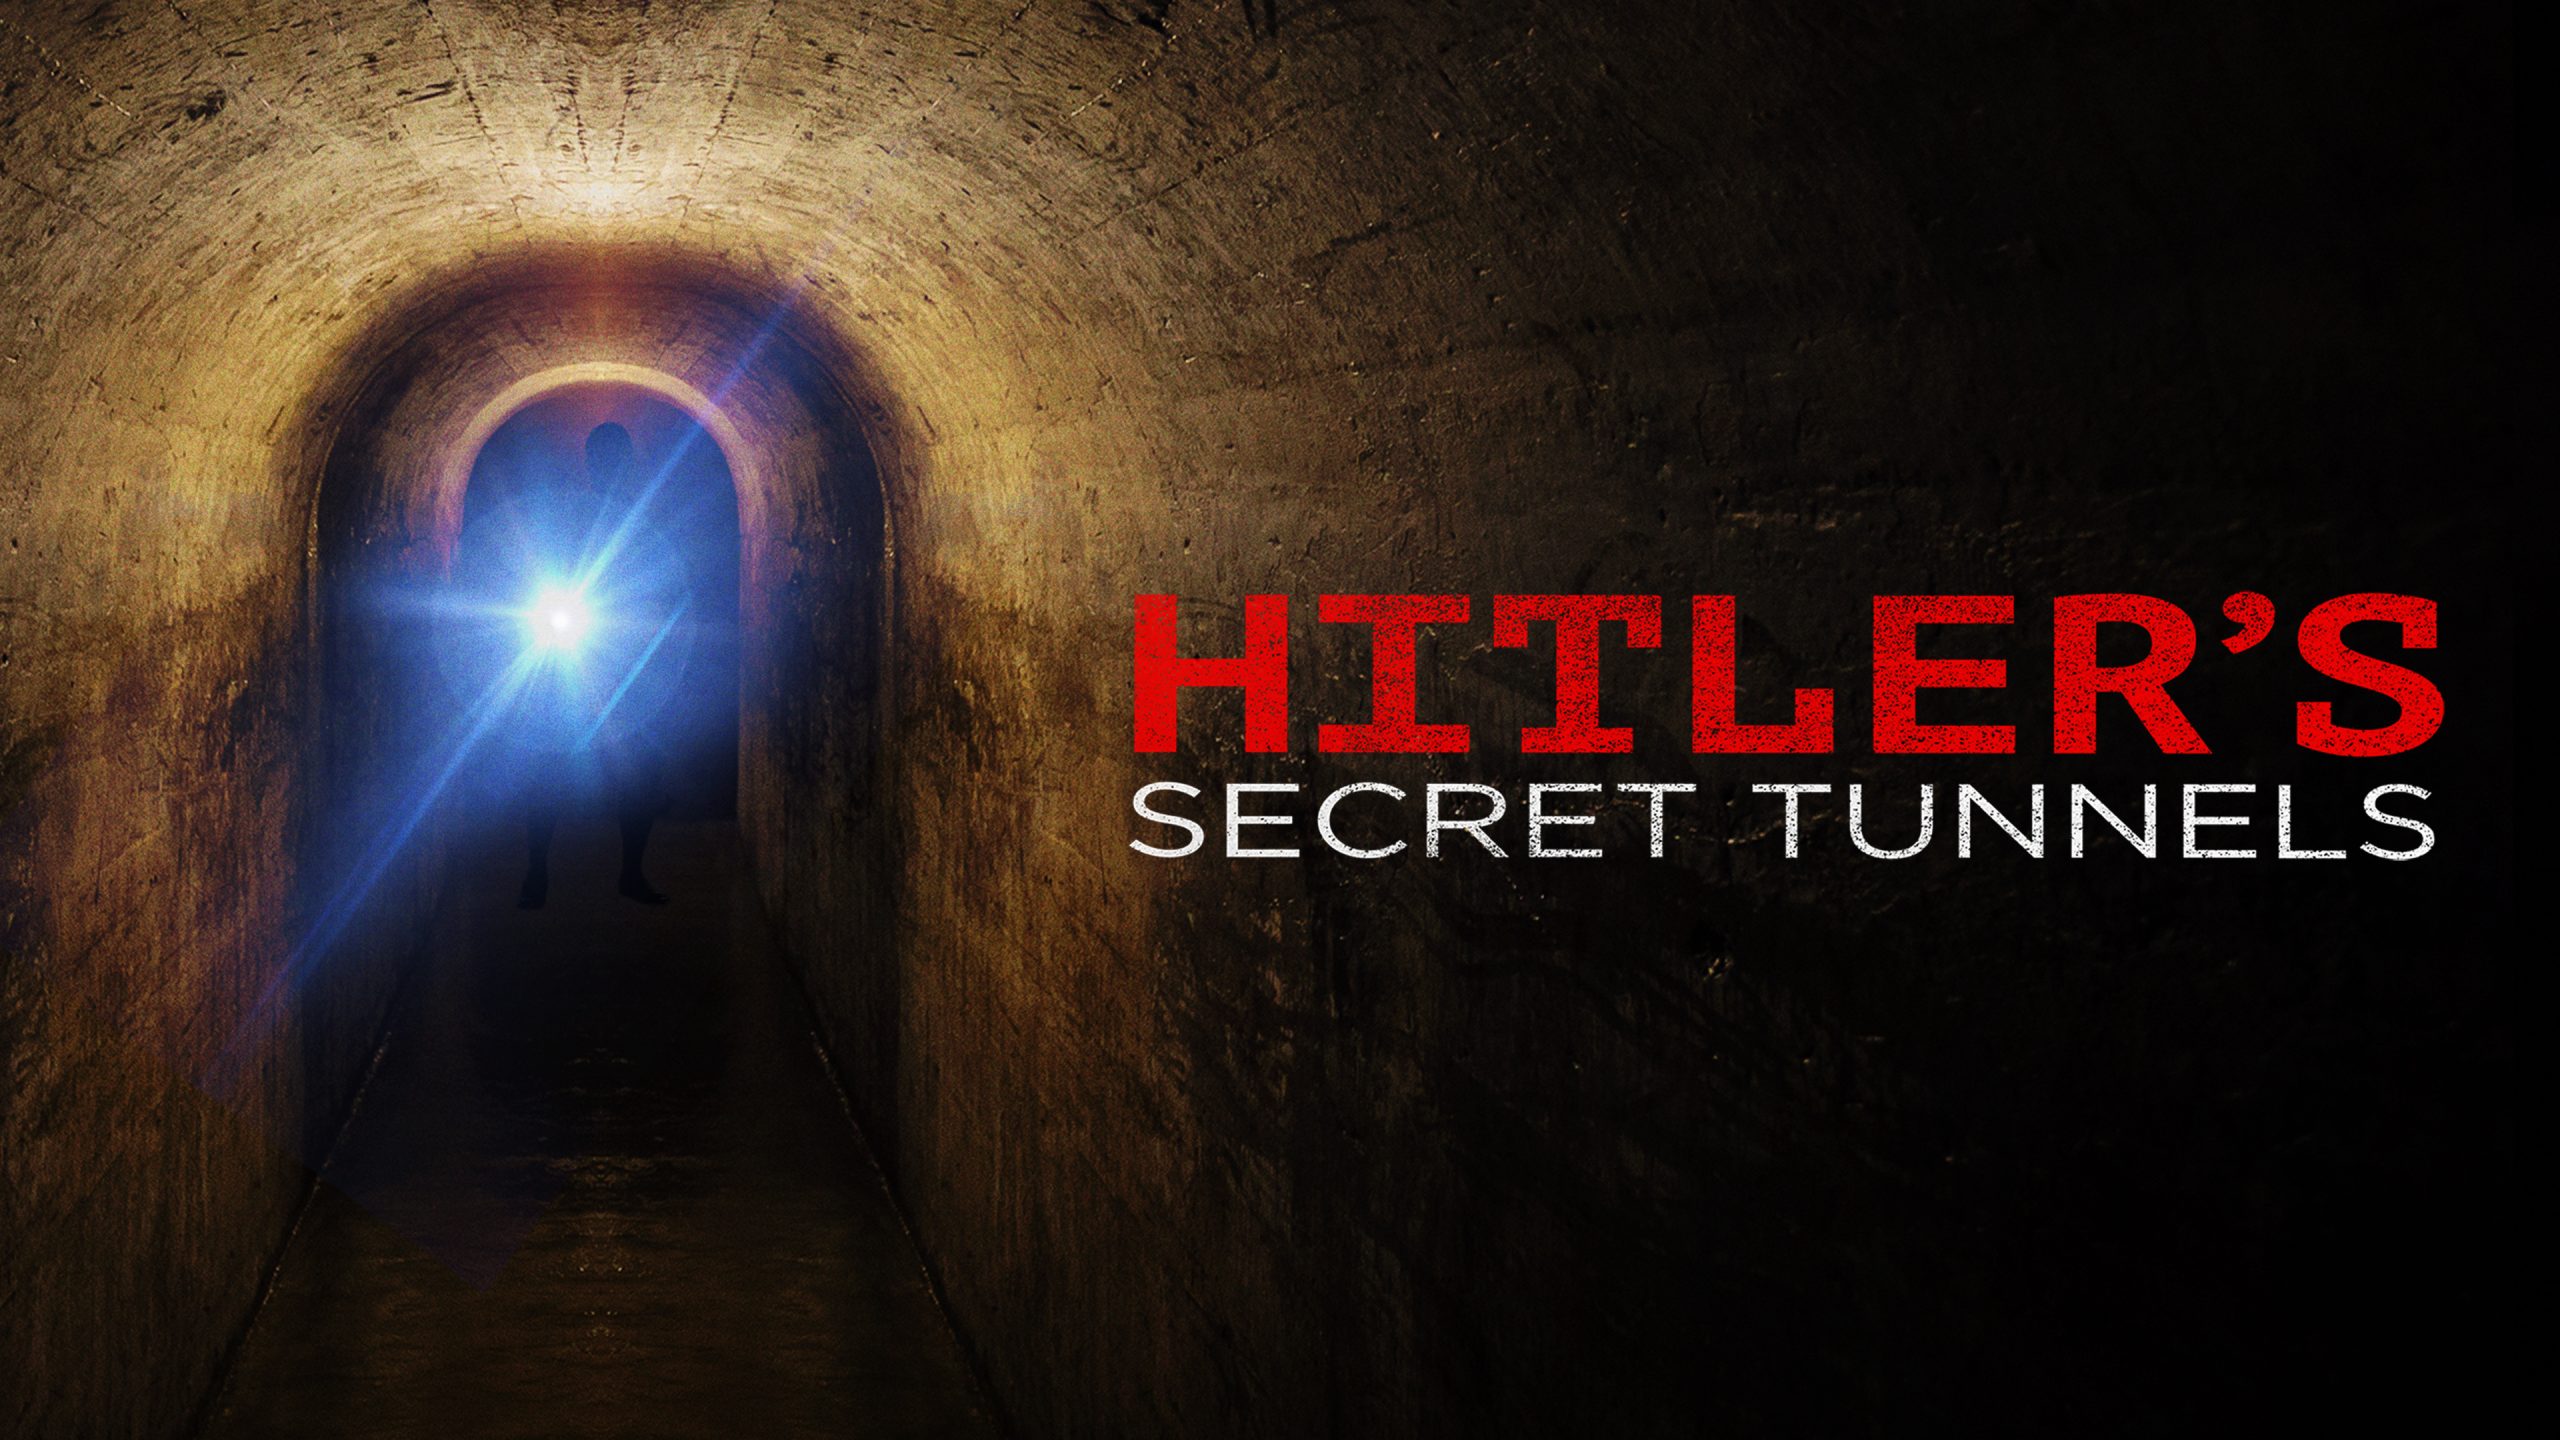 Hitler's Secret Tunnels